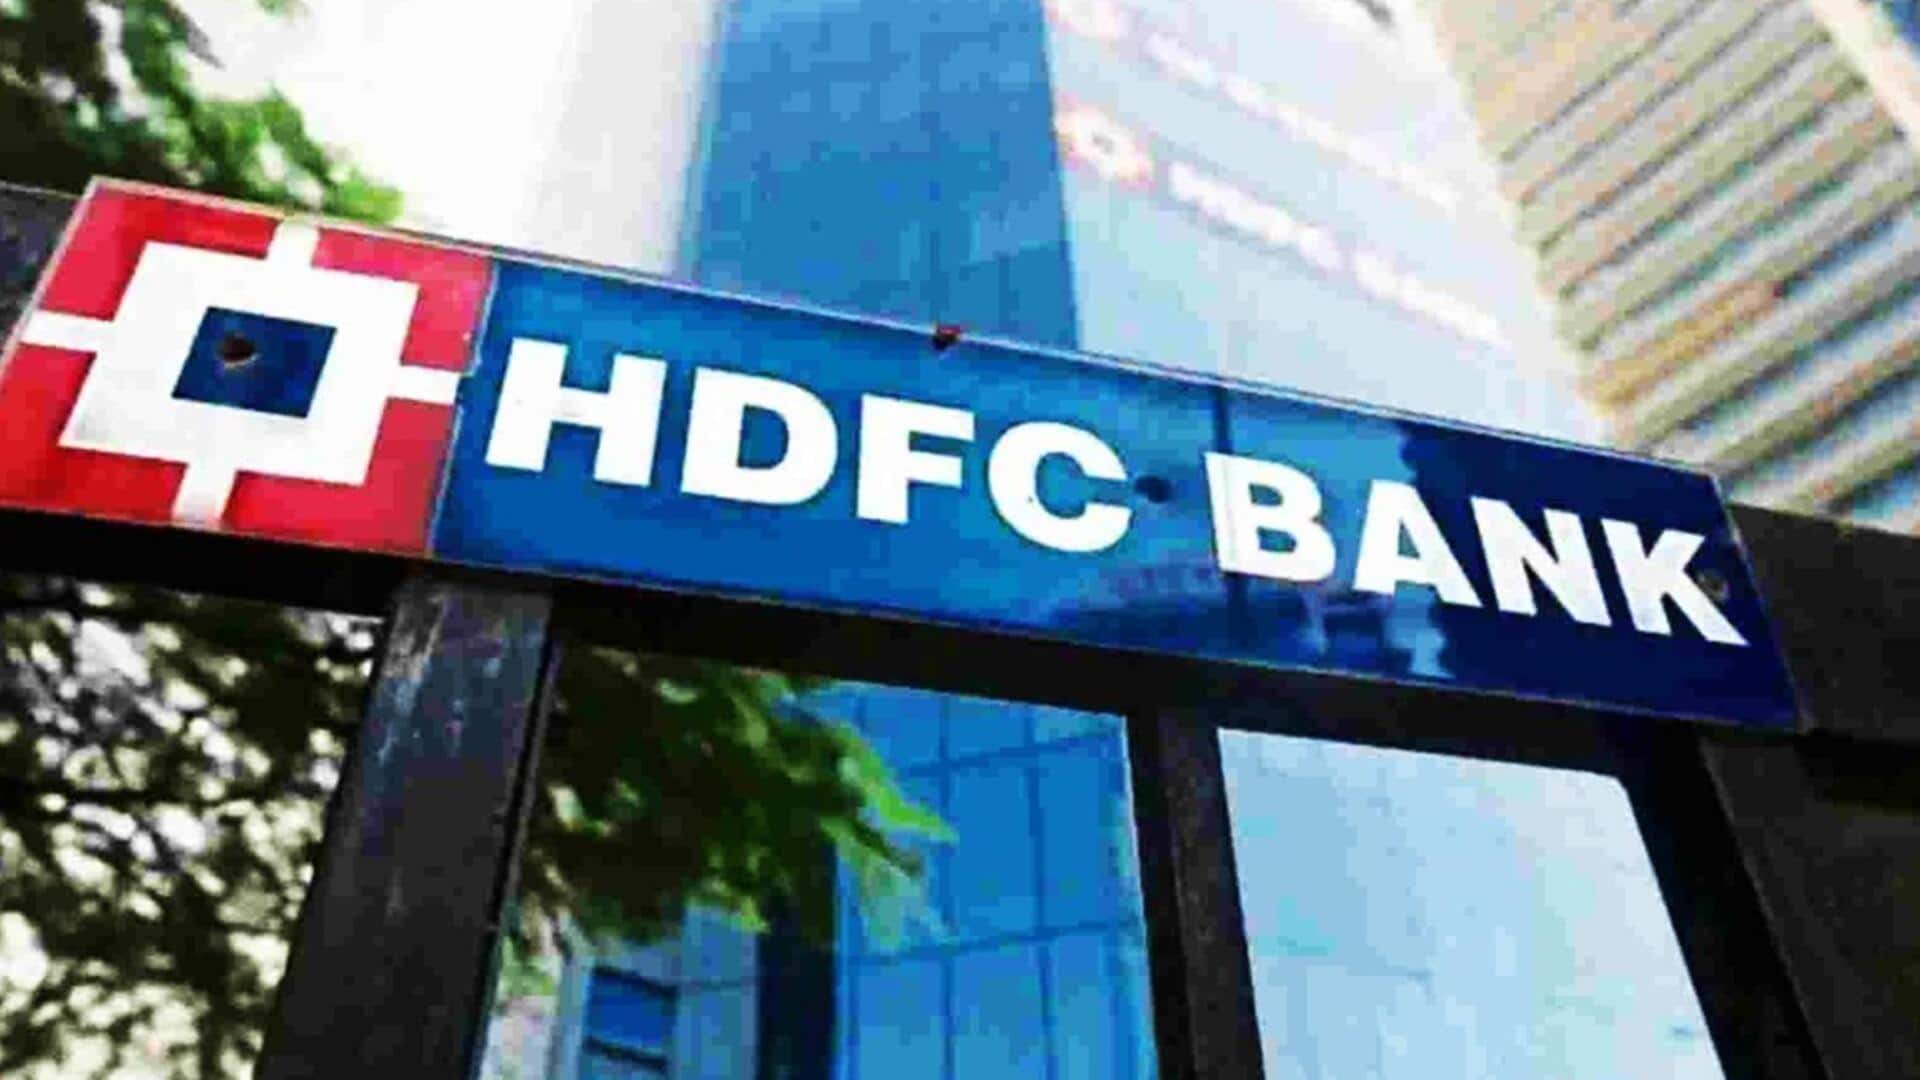 HDFC बैंक ने ऑनलाइन बैठक में साथियों के साथ दुर्व्यवहार करने वाले अधिकारी को किया निलंबित